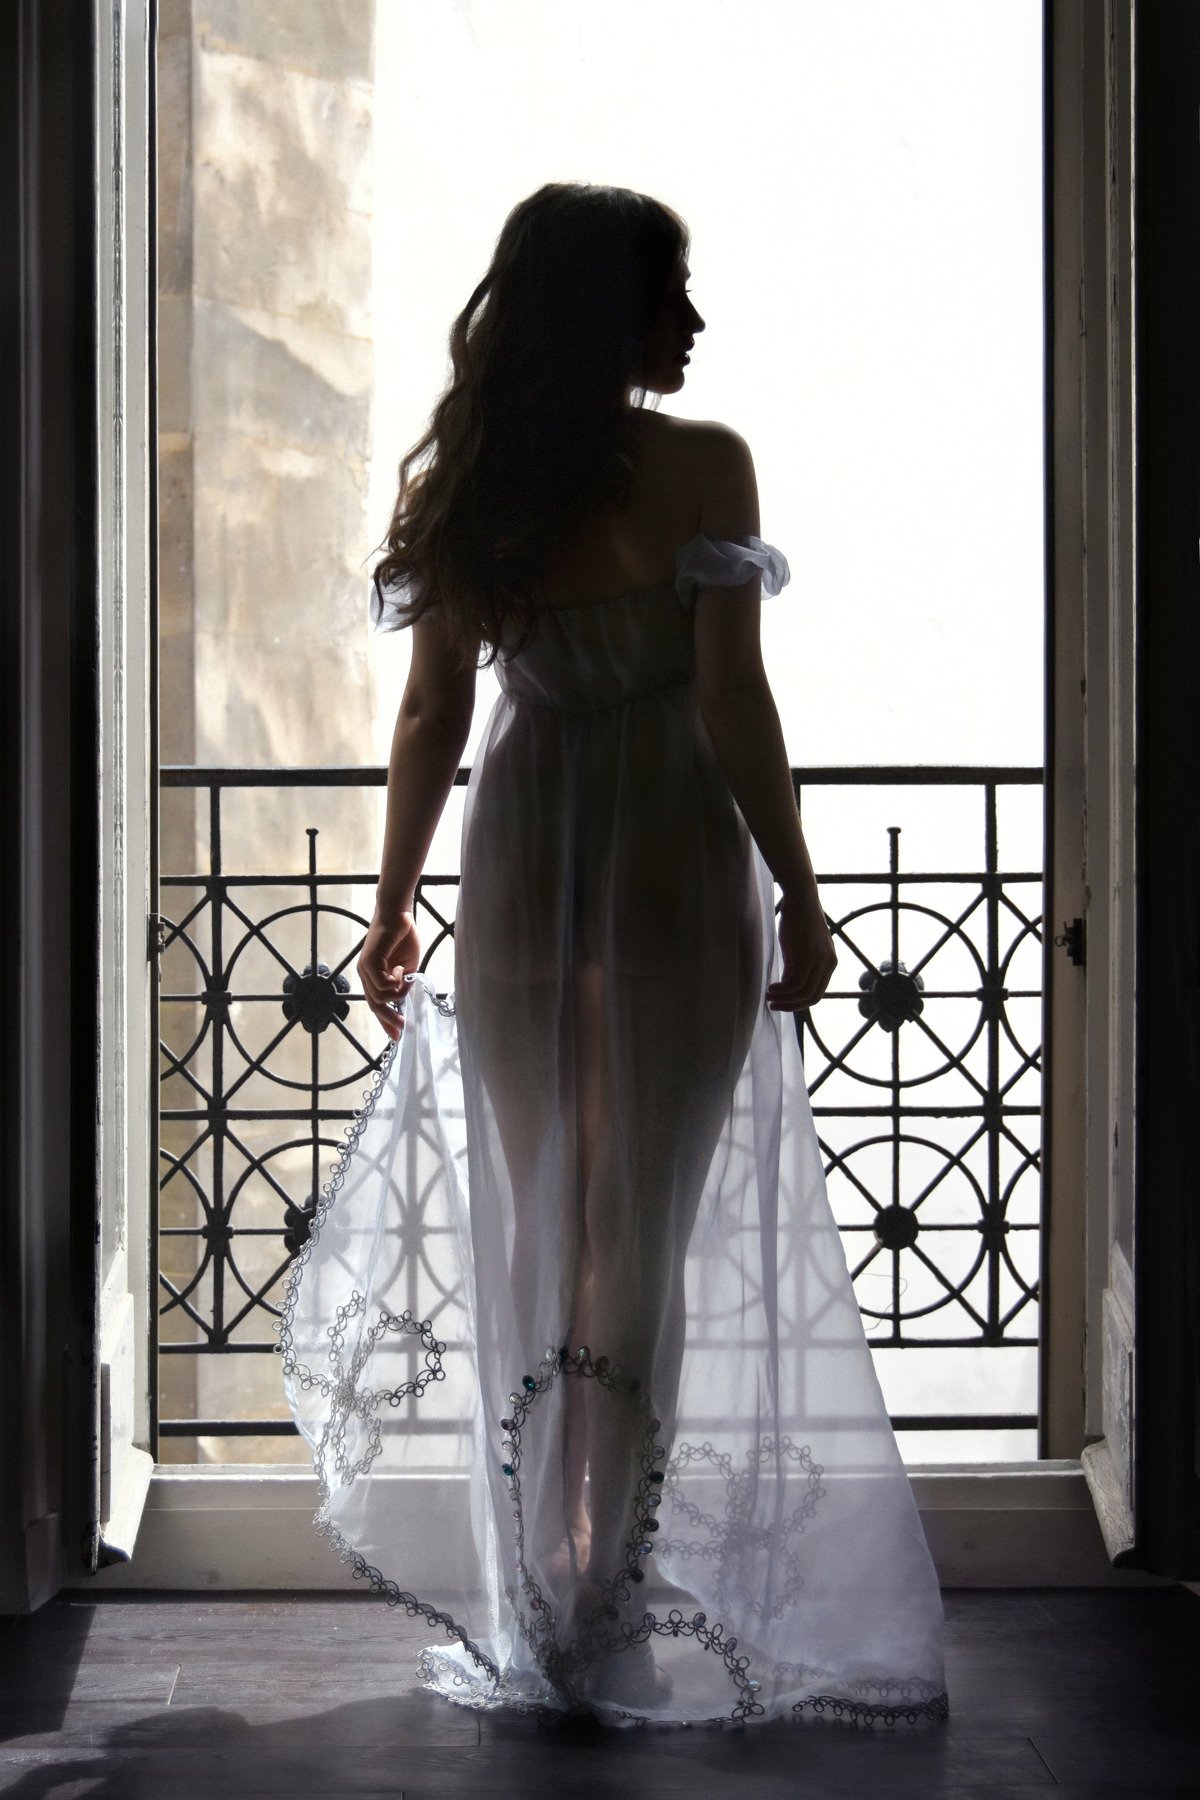 girl, window, paris, silhouette, contre-jour, beauty, transparency, Nikolai Endegor